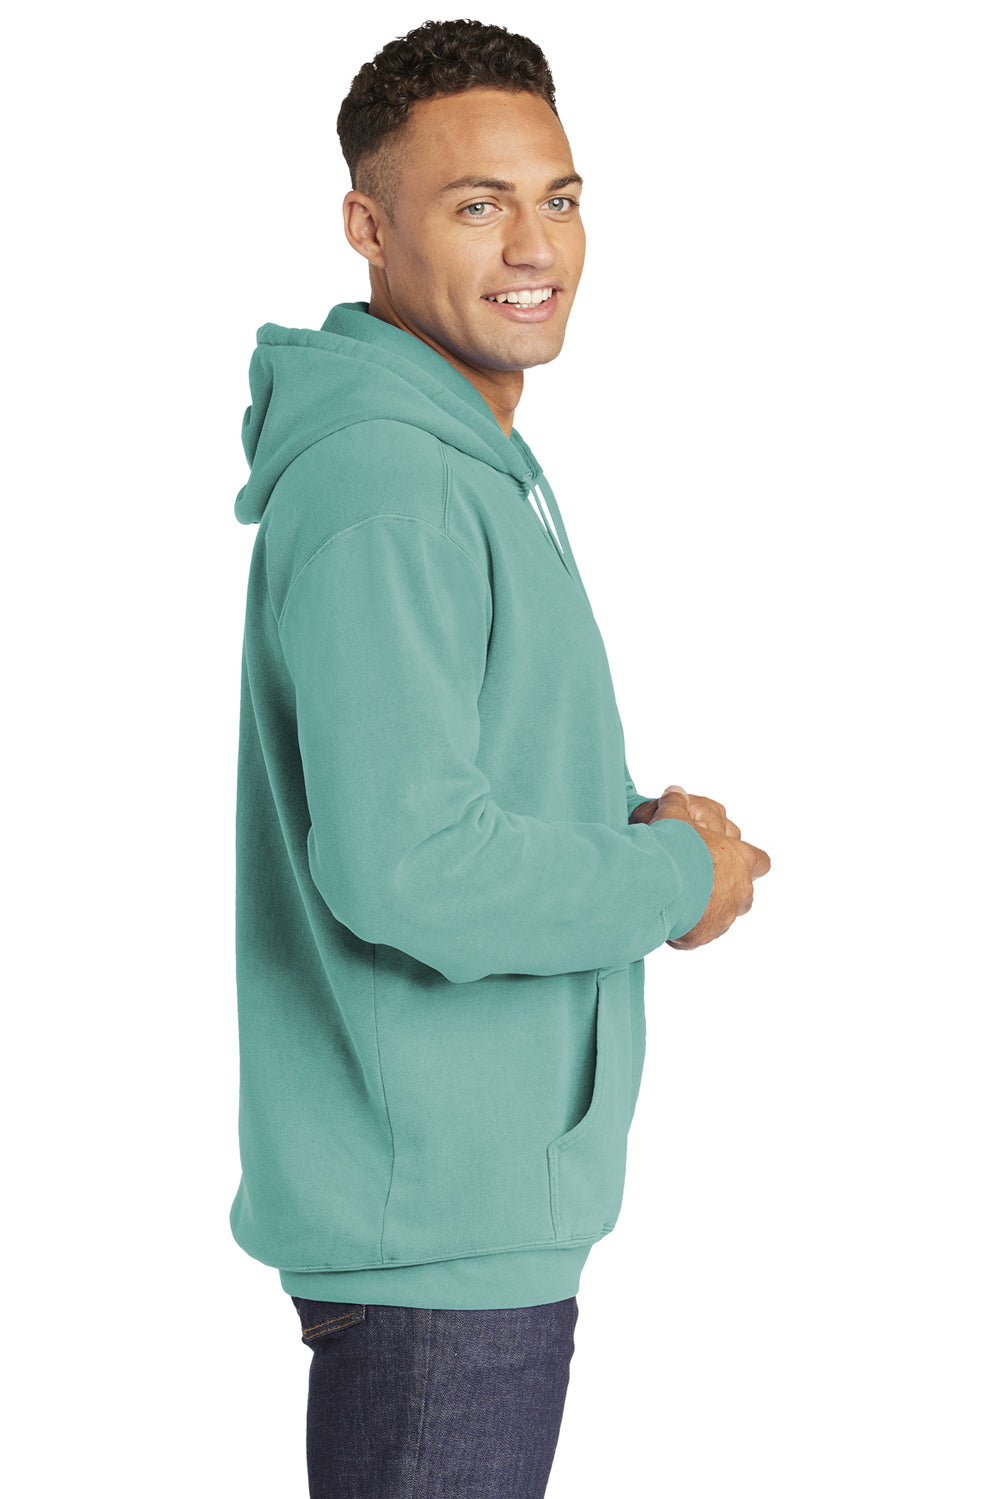 Comfort Colors 1567 Mens Hooded Sweatshirt Hoodie Seafoam Green Side